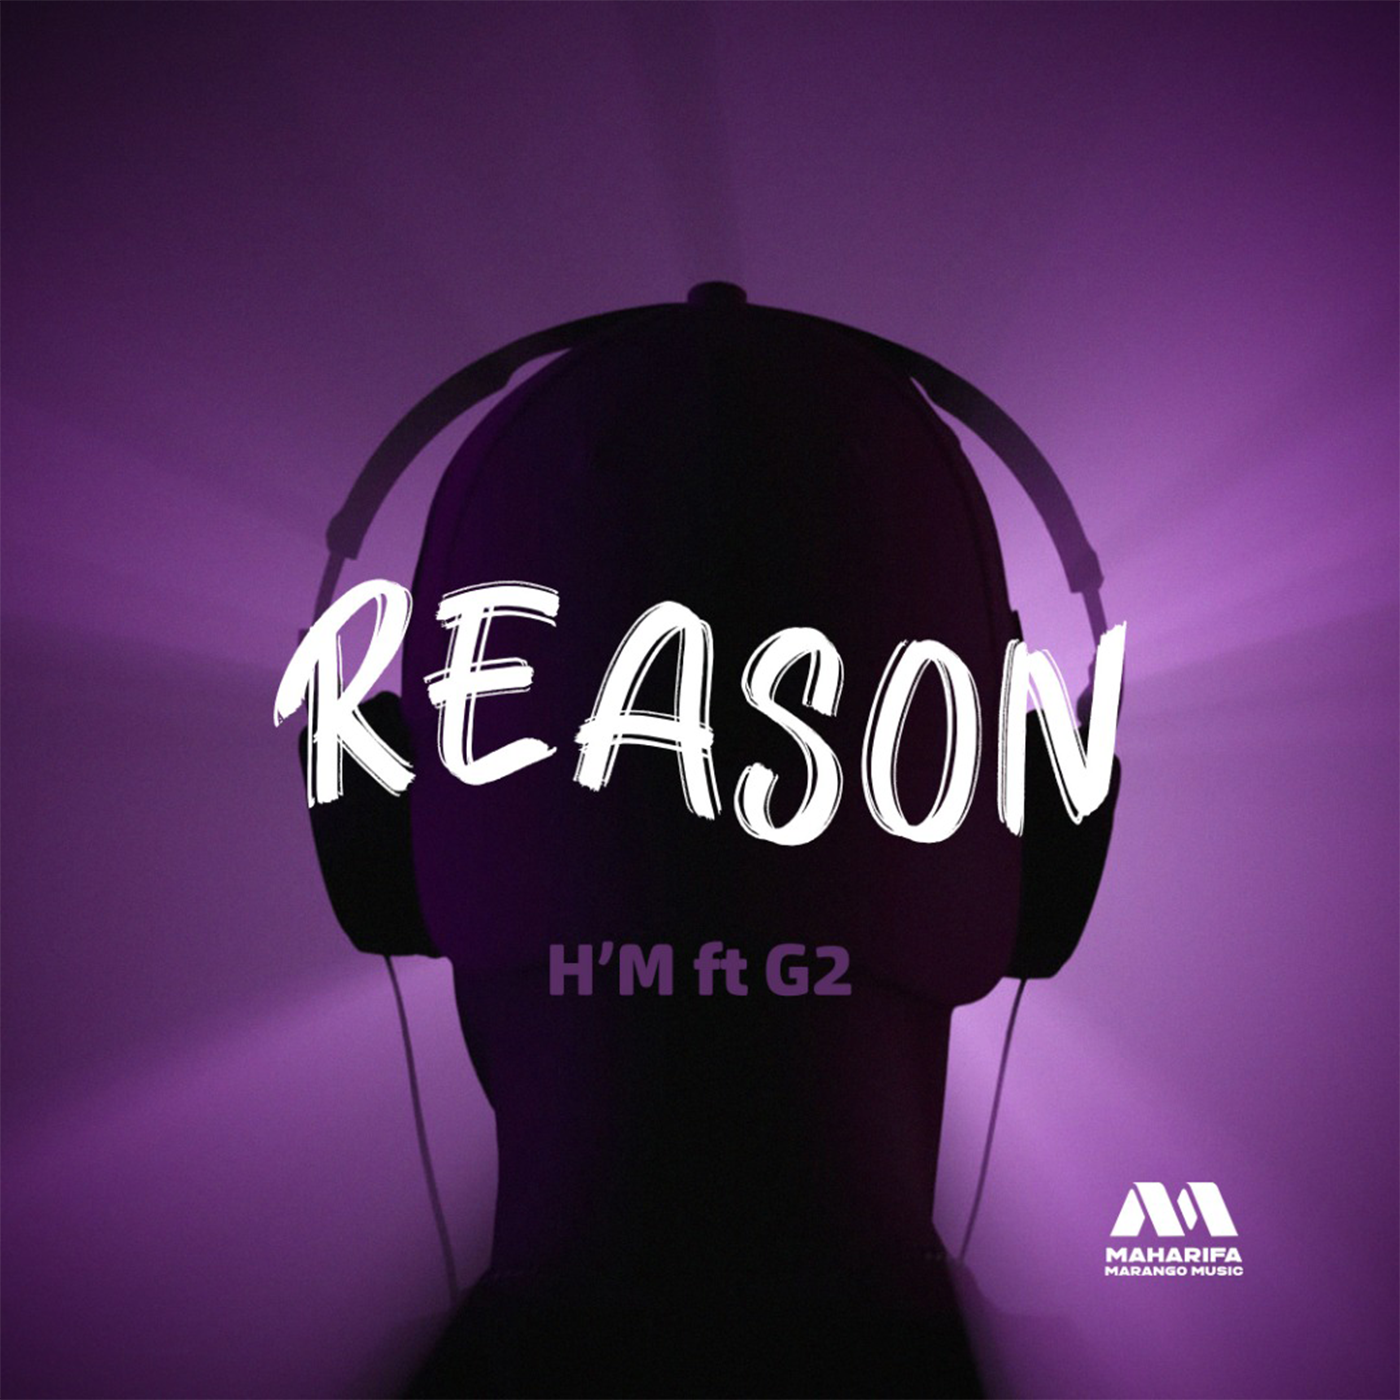 Reason (Ft G2)